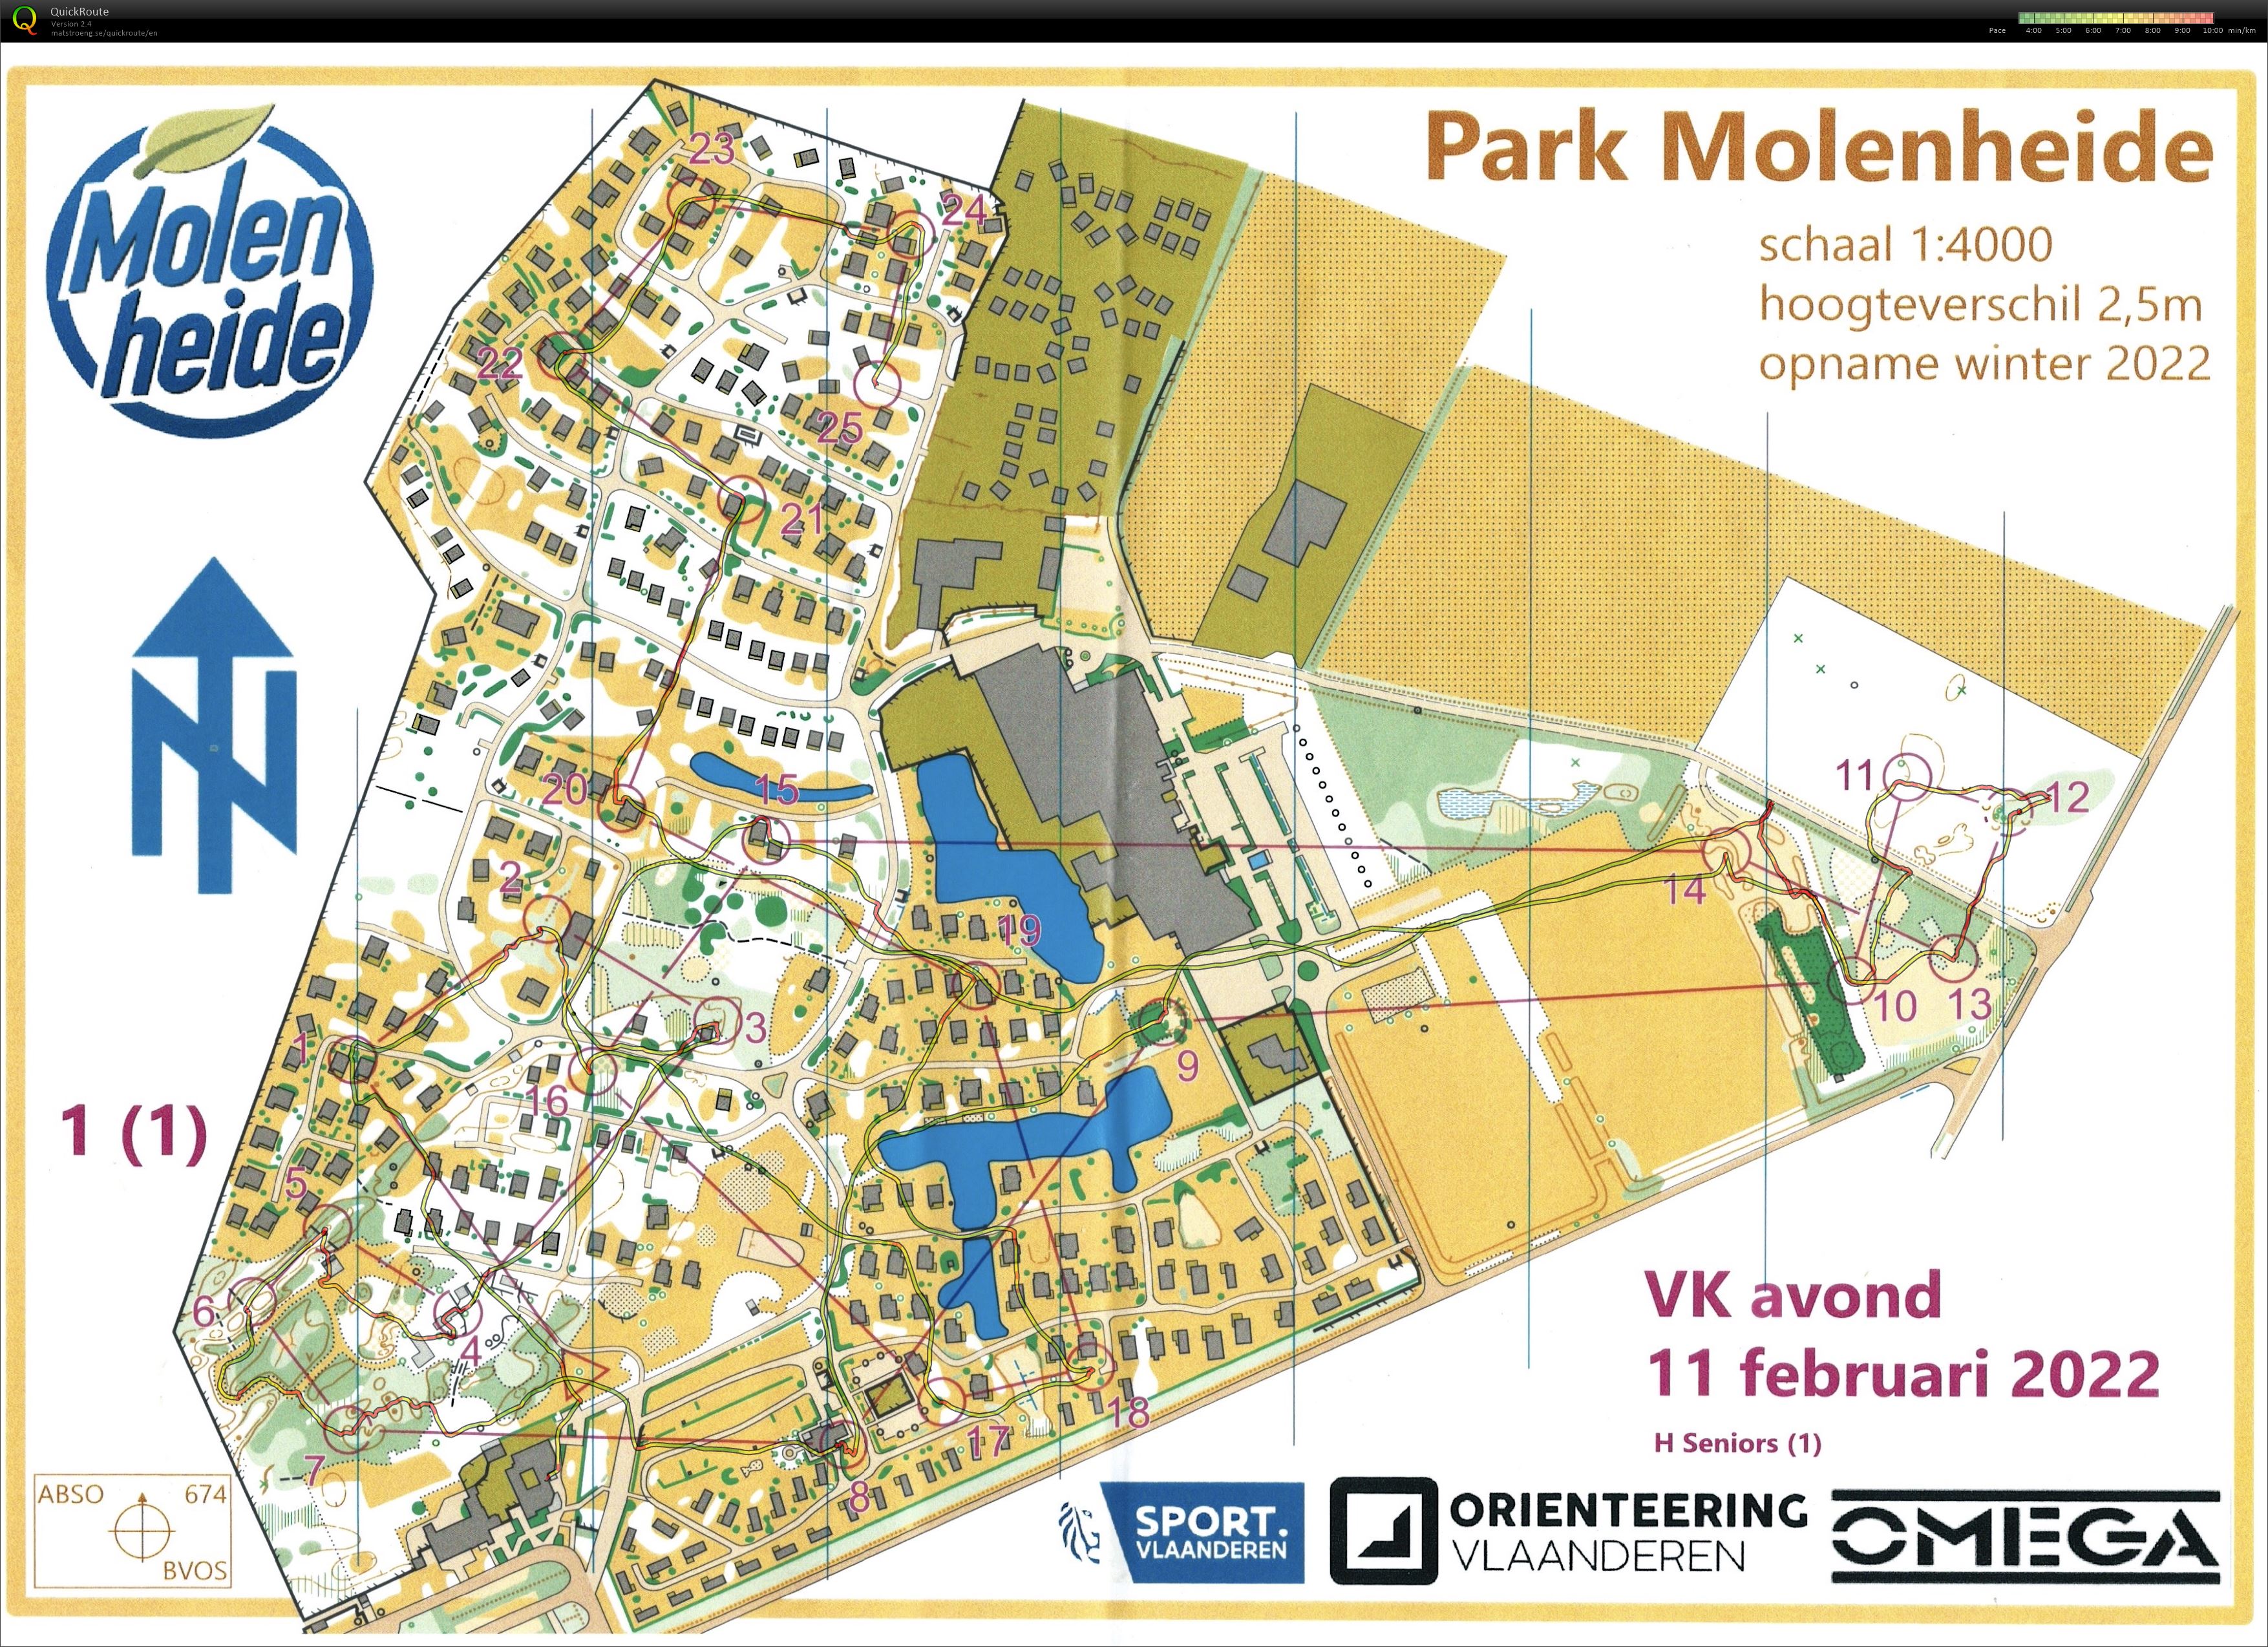 VK Avond - Park Molenheide (11/02/2022)